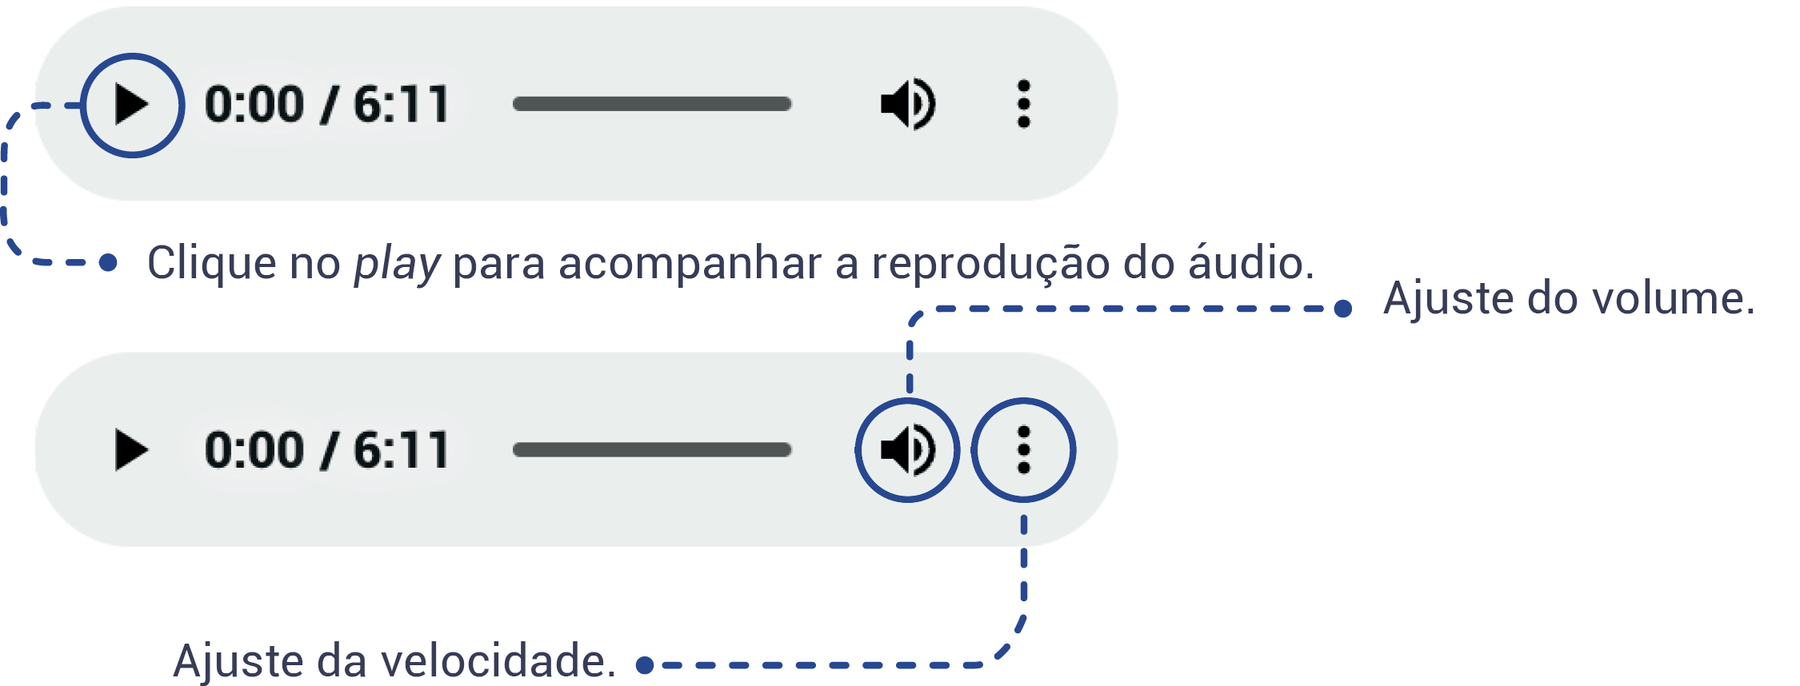 Esquema de navegação. Mostra como deve ser feita a navegação do objeto digital ÁUDIO, indicando que o ícone play deve ser clicado para acompanhar a reprodução do áudio, o ícone de som deve ser usado para o ajuste de volume e o ícone com três pontos alinhados verticalmente serve para o ajuste da velocidade do áudio.